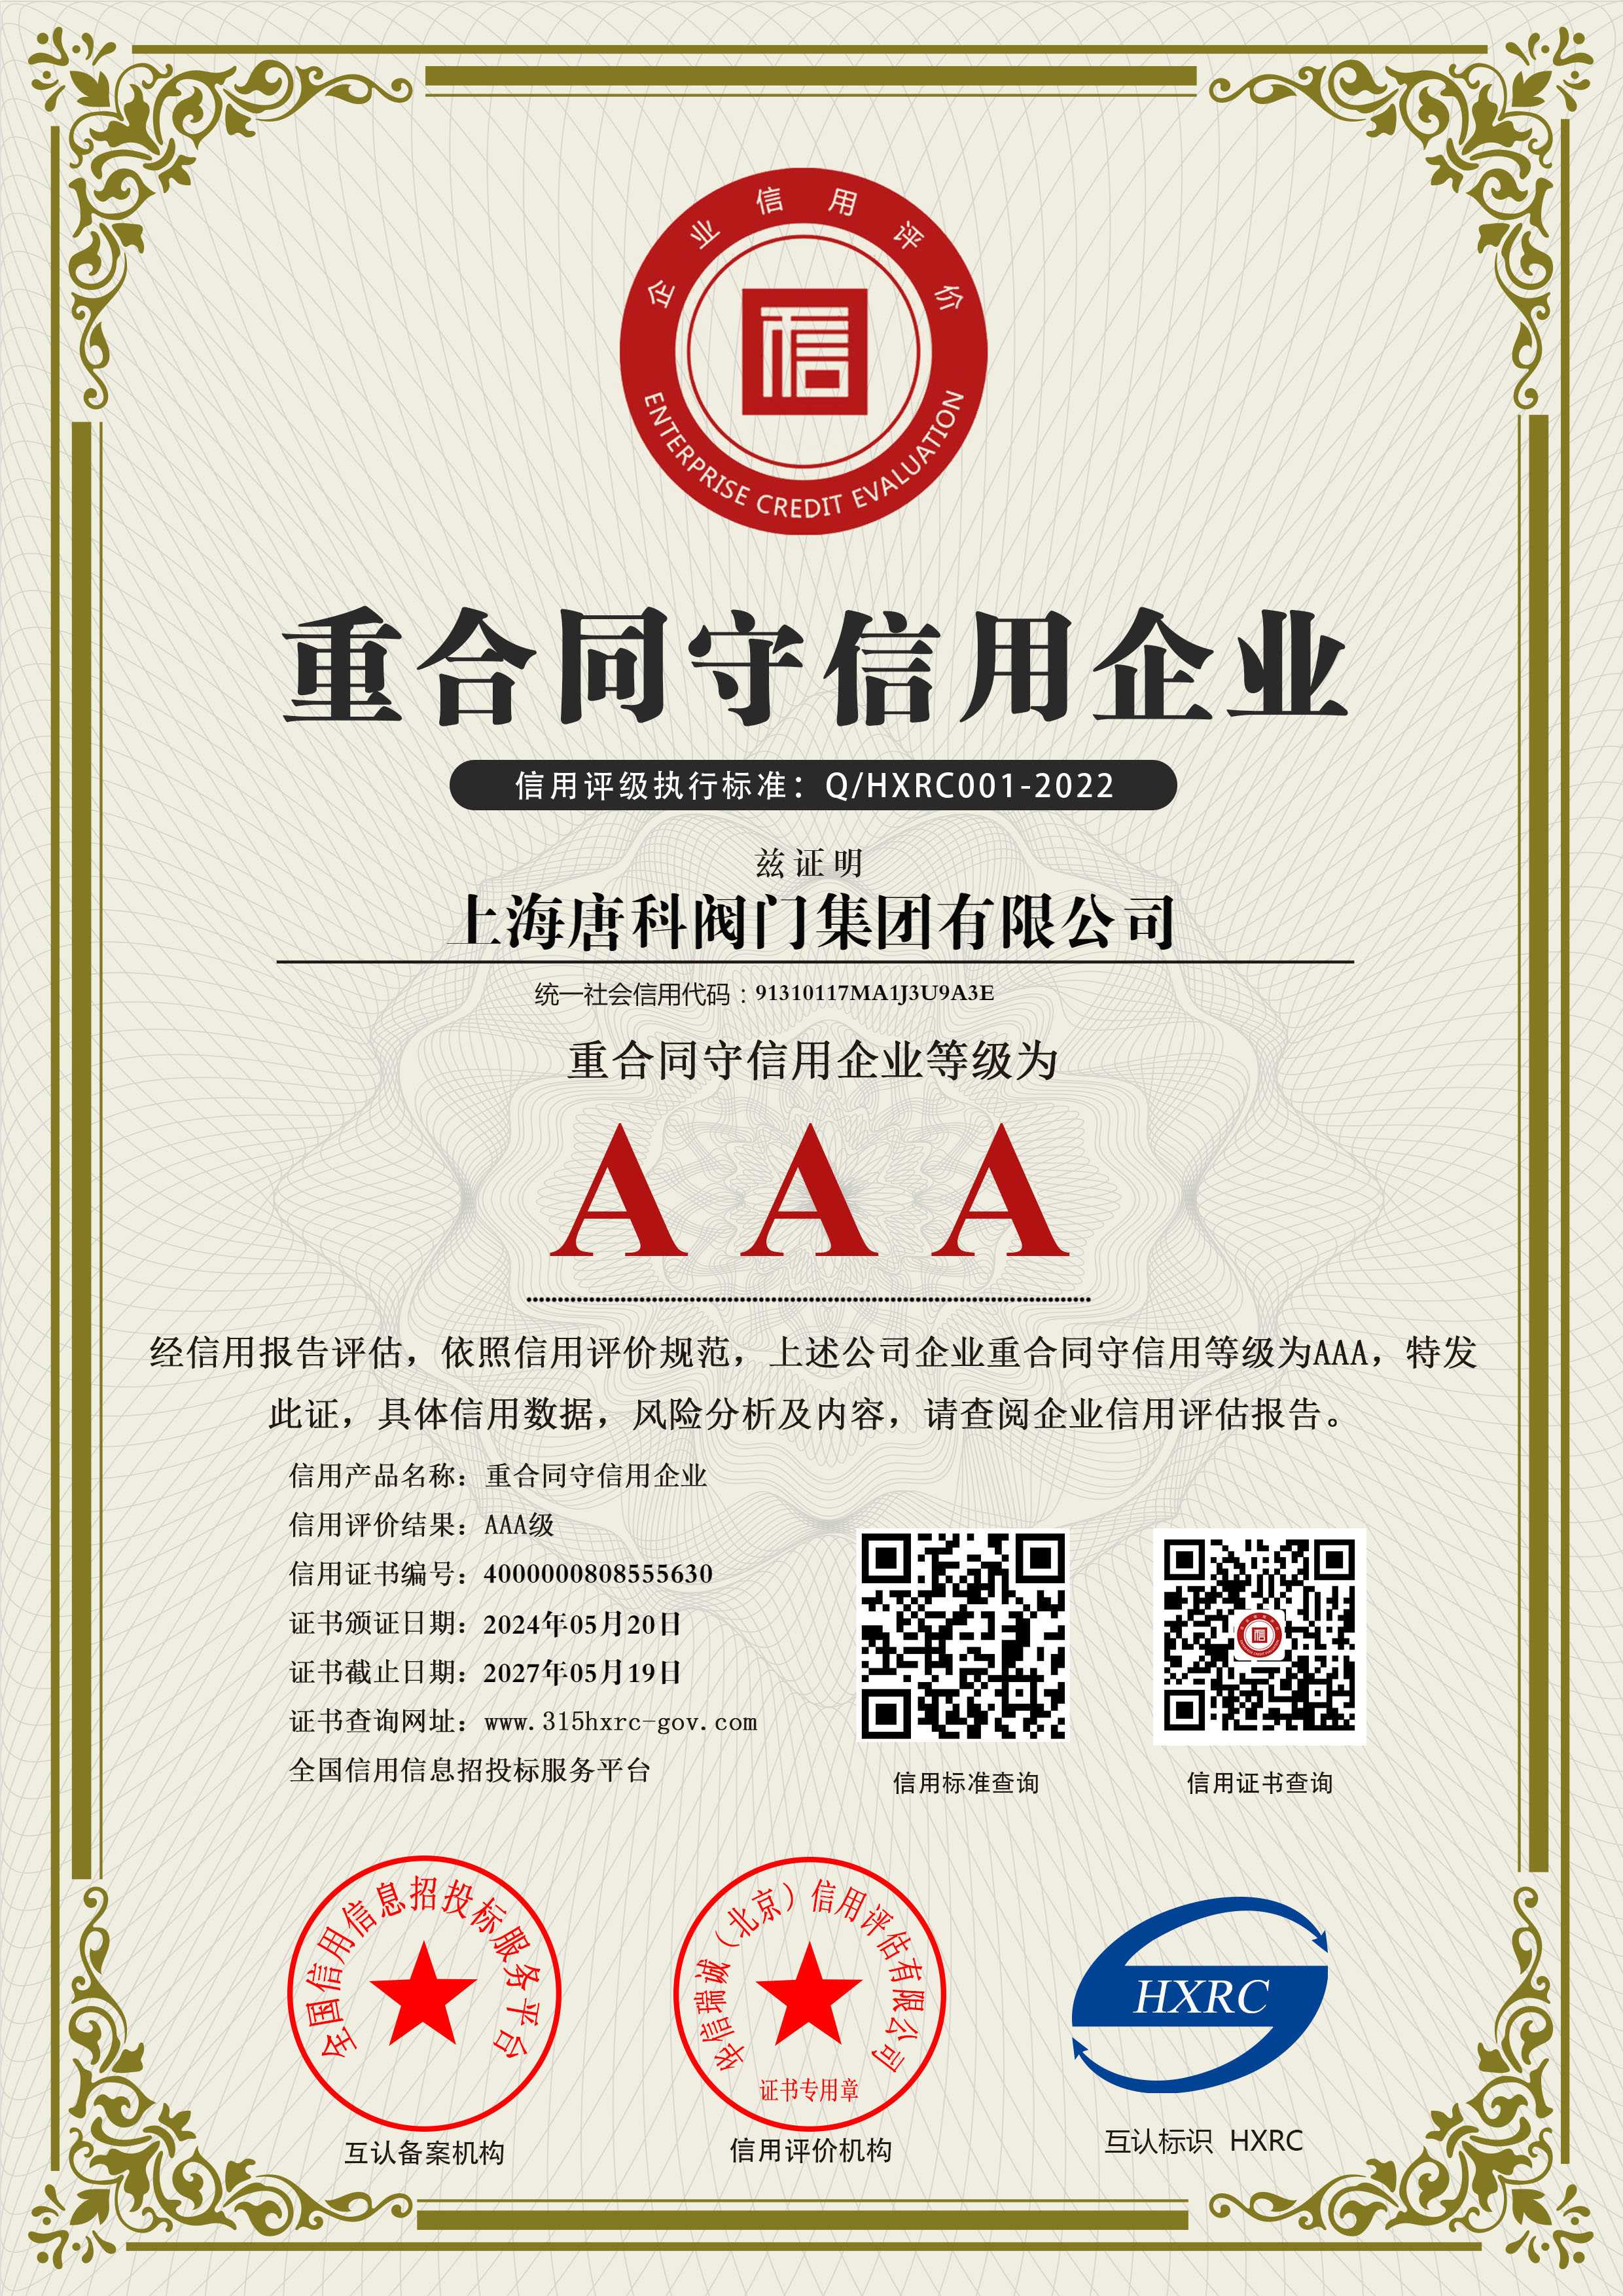 10 上海唐科閥門集團有限公司-AAA級重合同守信用企業-新版